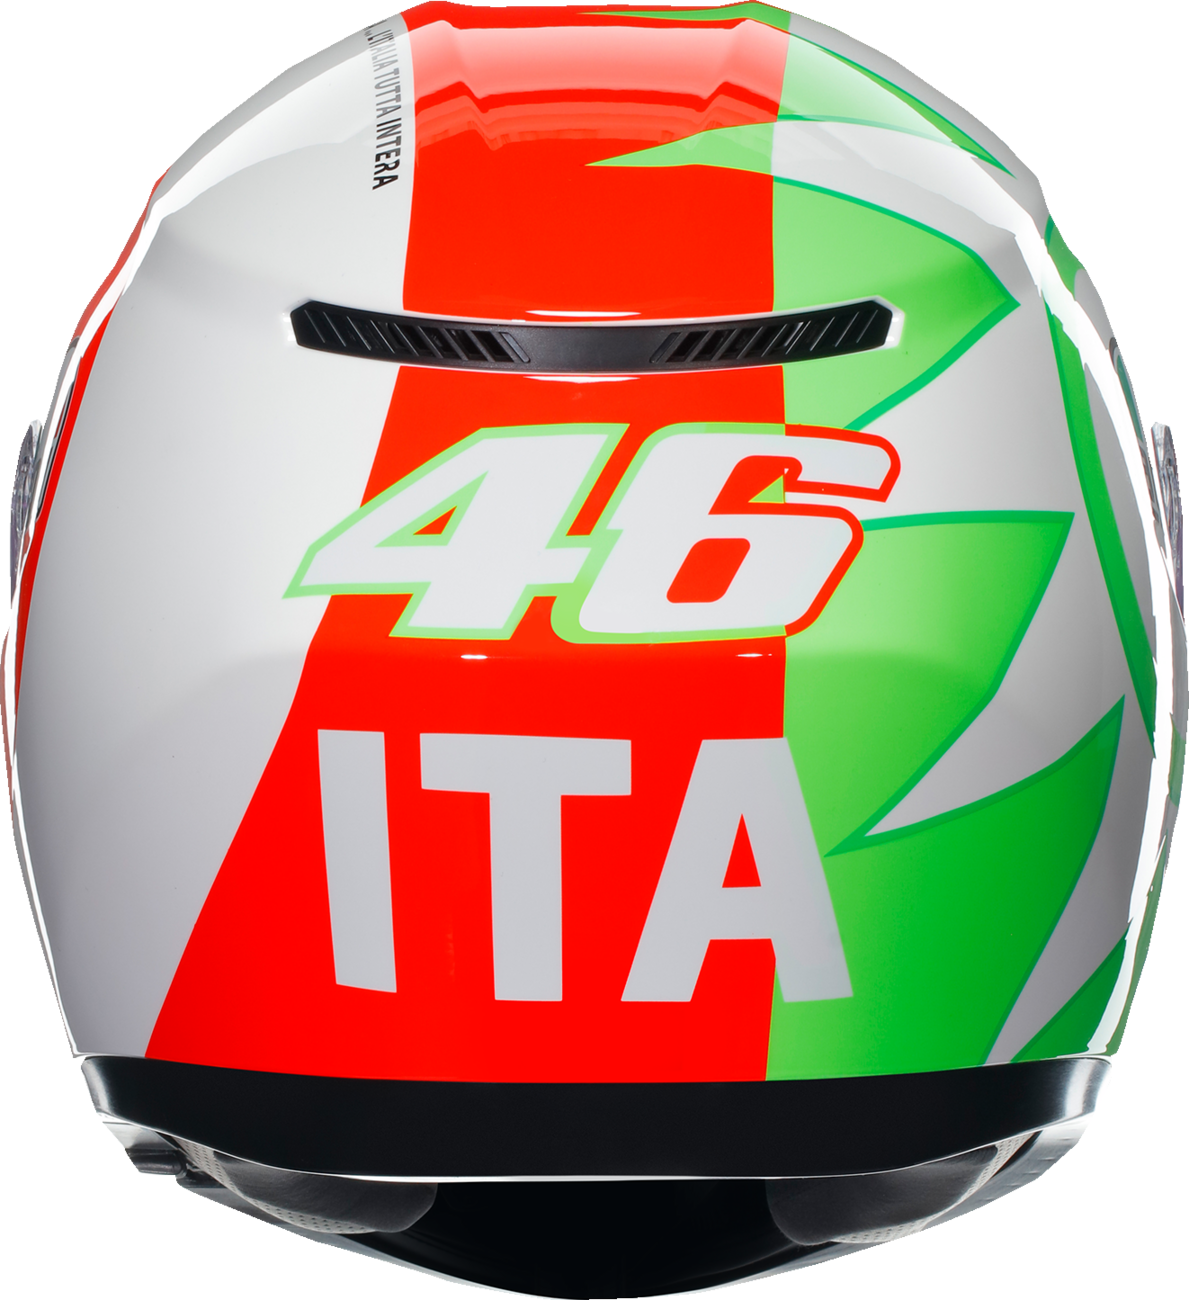 Casco AGV K3 - Rossi Mugello 2018 - Grande 2118381004005L 